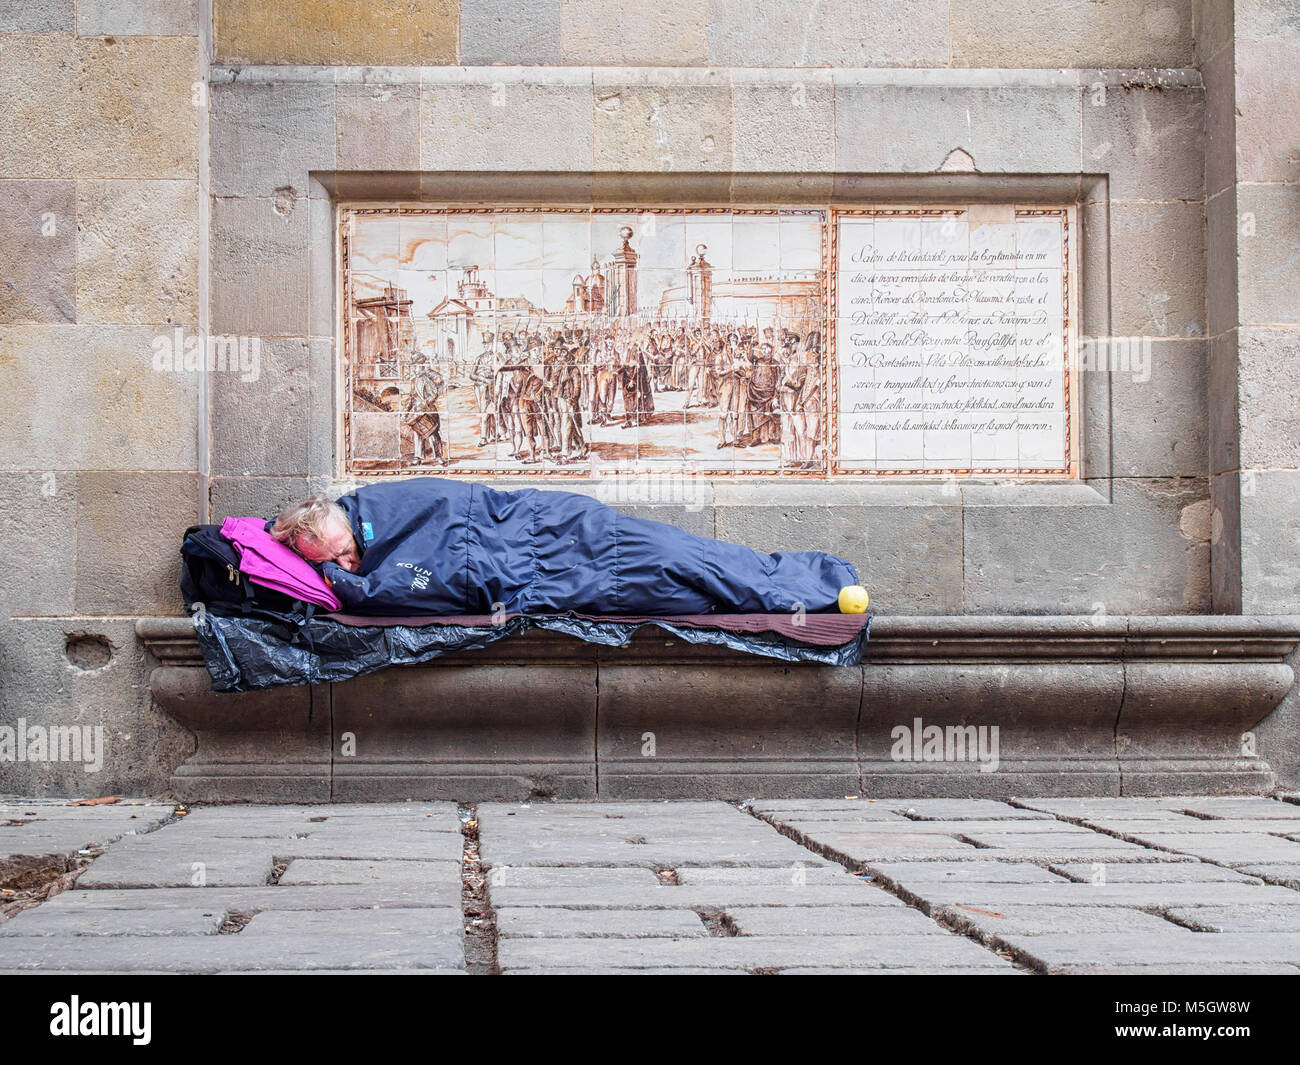 BARCELONA, SPANIEN - 17. FEBRUAR 2018: Obdachlosen schläft auf der Straße des gotischen Viertels Stockfoto